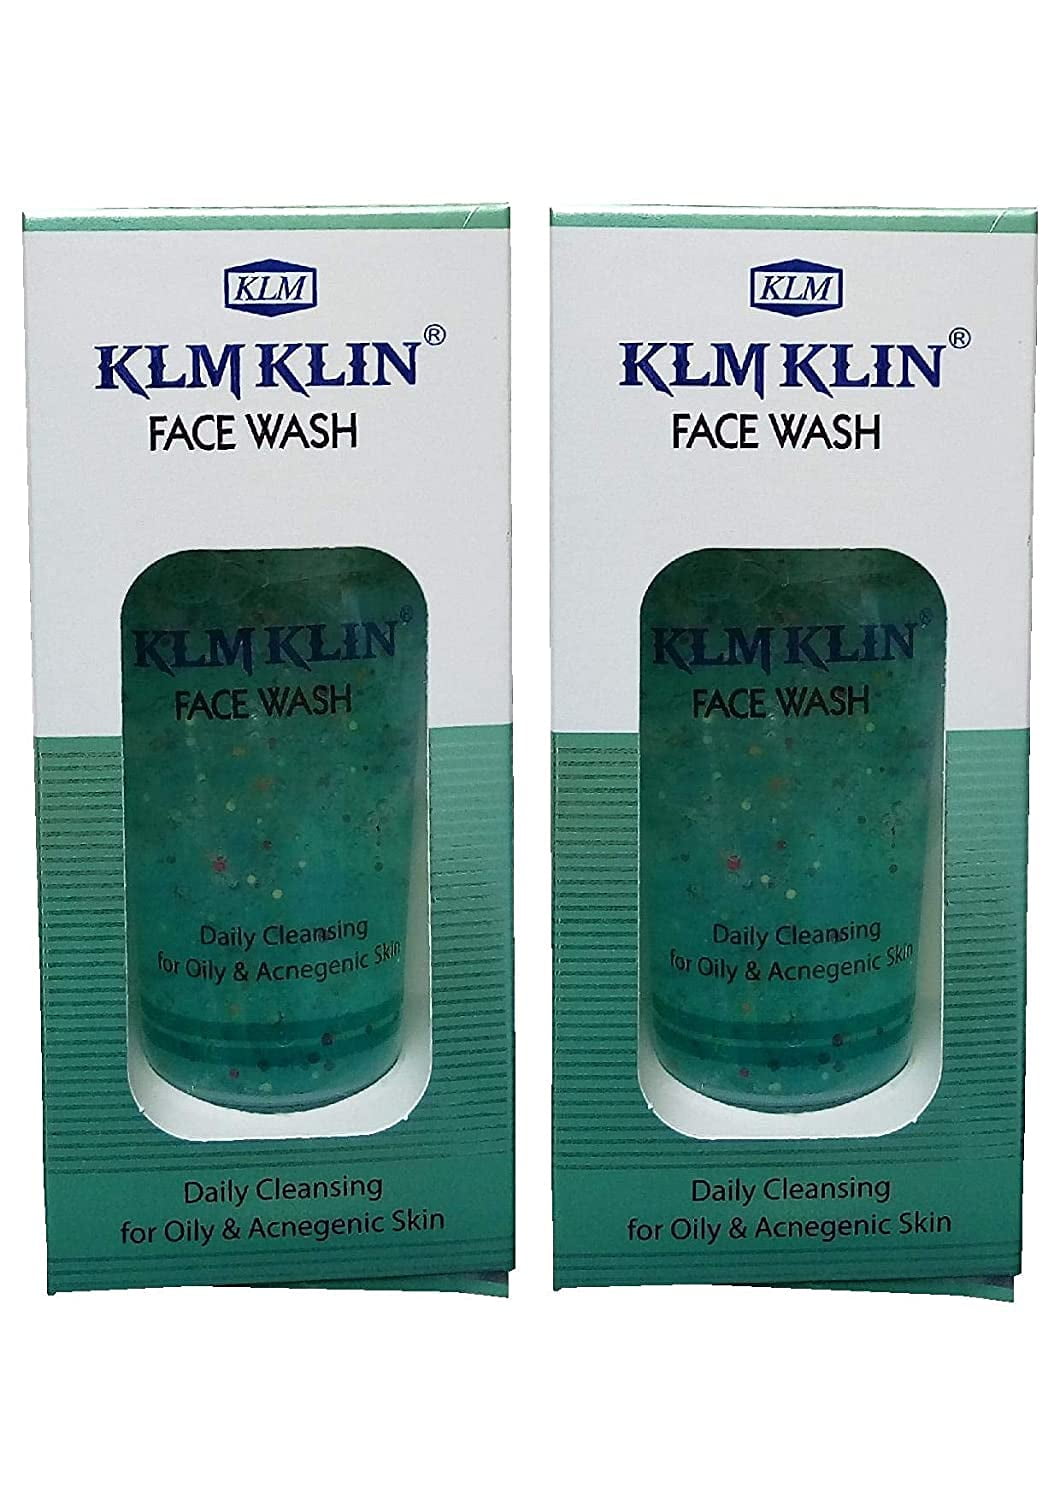 klm klin face wash benefits